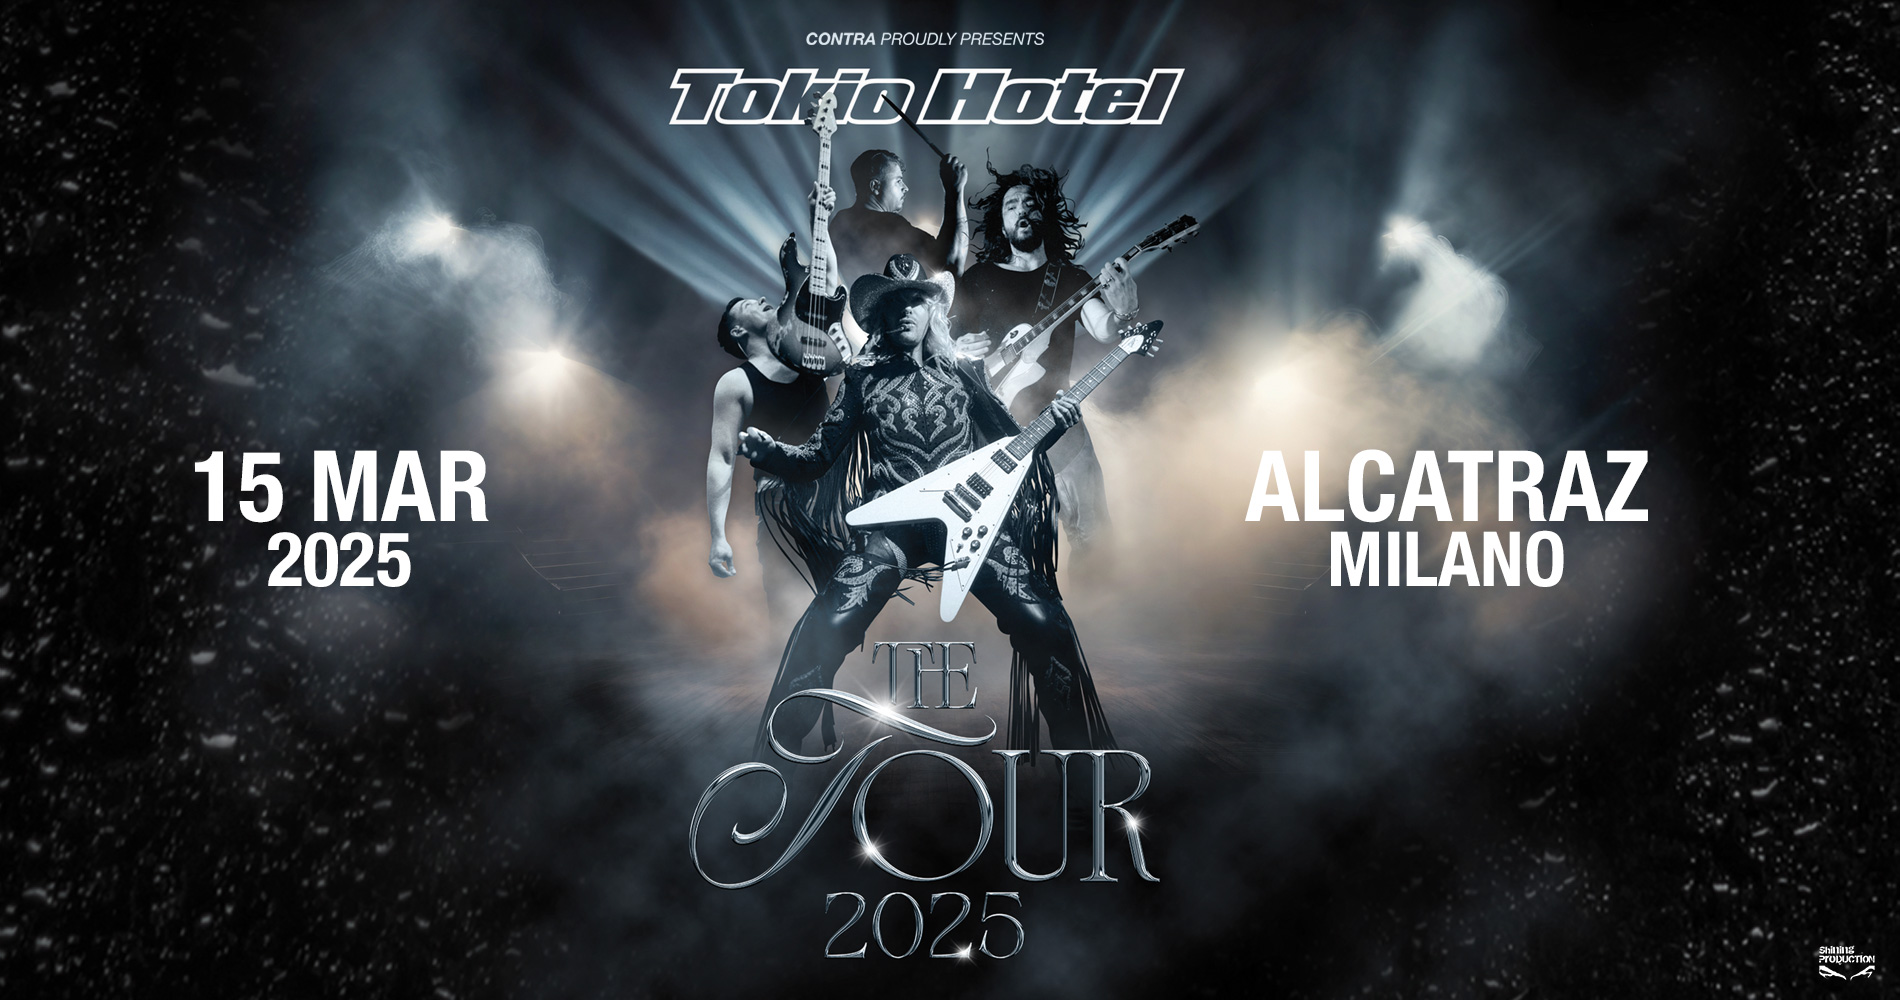 Tokio Hotel - The tour 2025 - Alcatraz